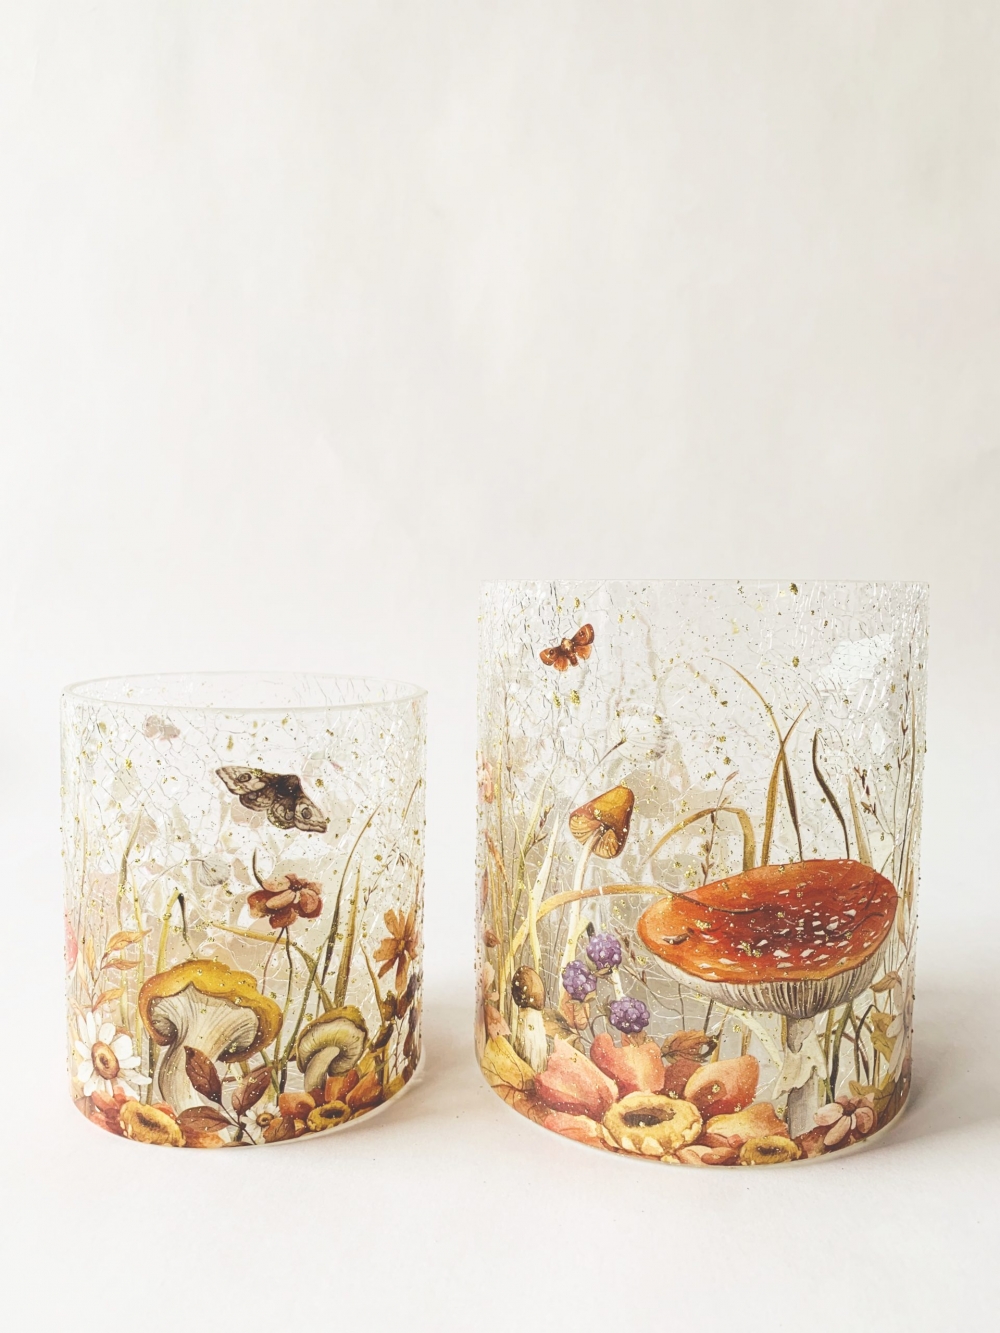 Et nydelig lysglass i krakelert glass med sopp-motiv. Kommer i to størrelser. Dette måler 11,5x13cm.